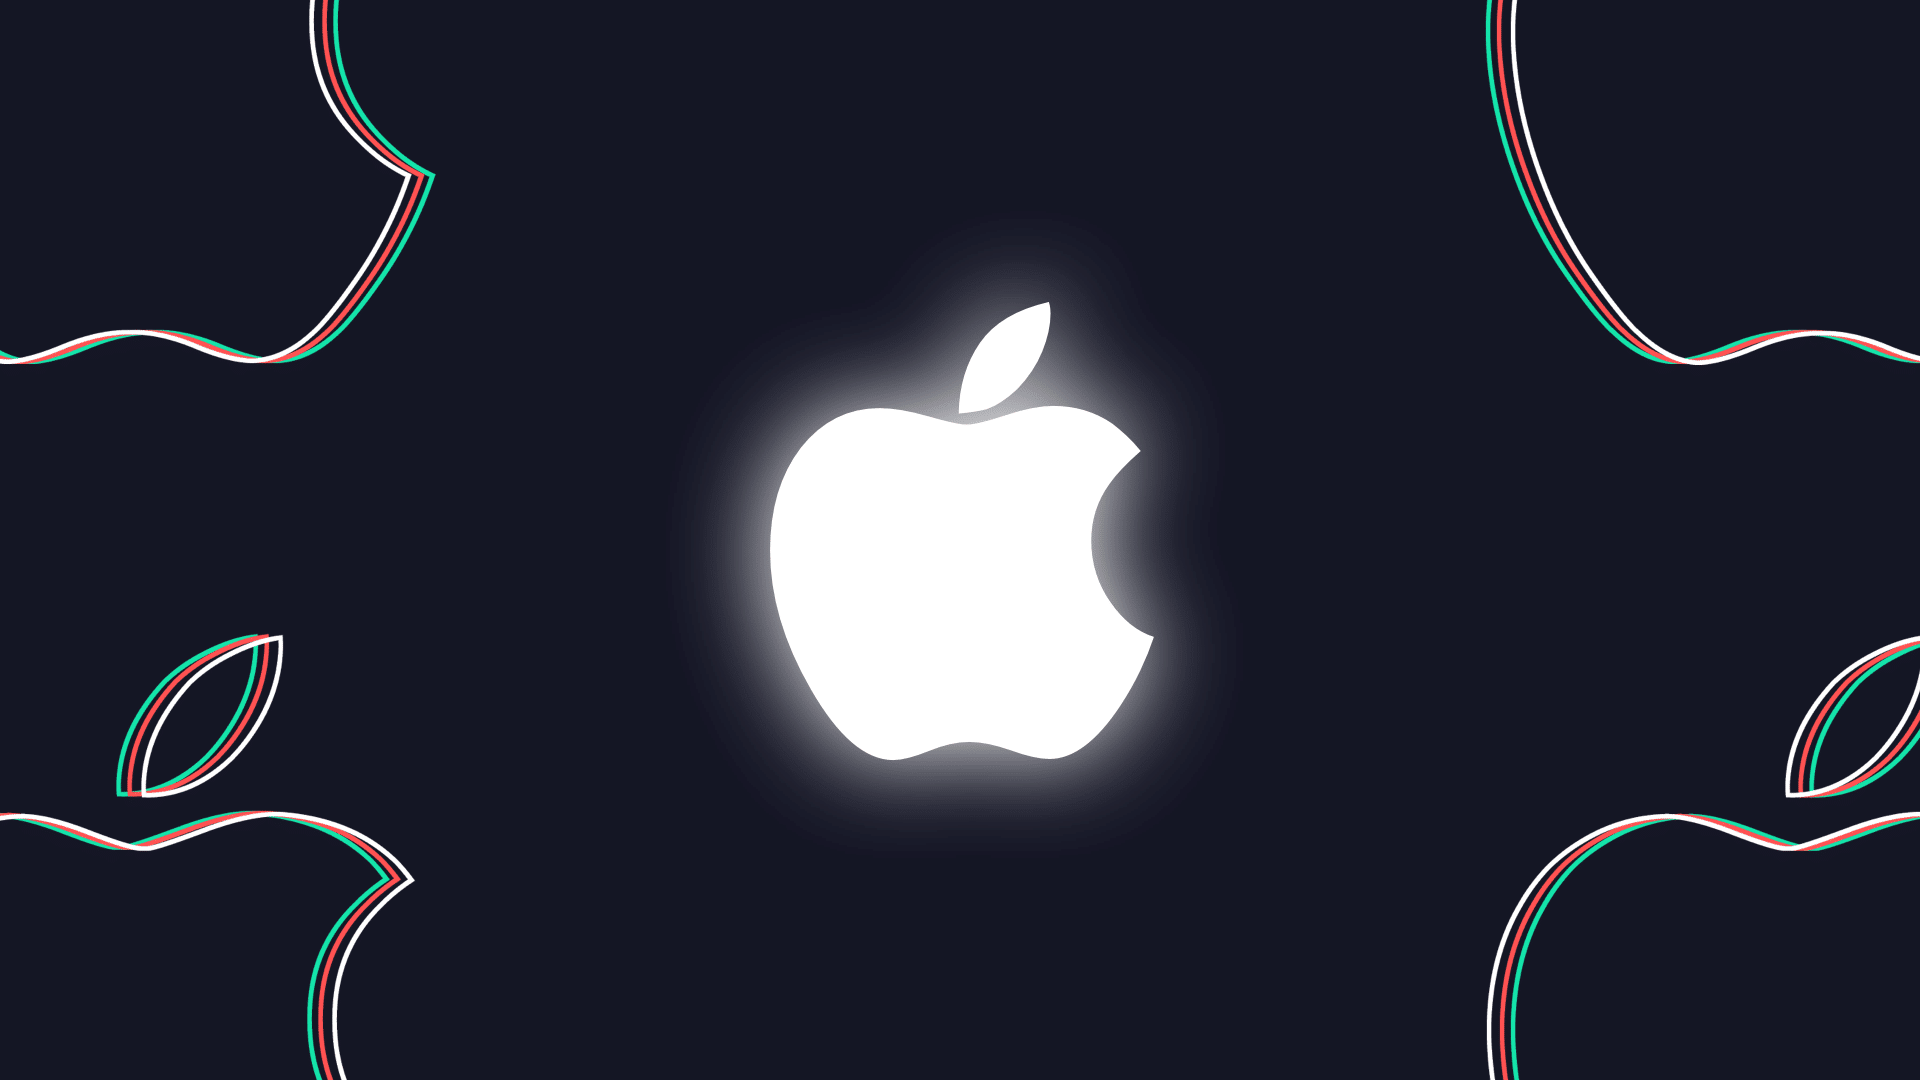 AppleGewinn fÃ¼r das vierte Quartal 2021 bekannt gegeben: 83,4 Milliarden US-Dollar Umsatz, 20,6 Milliarden US-Dollar Gewinn 249